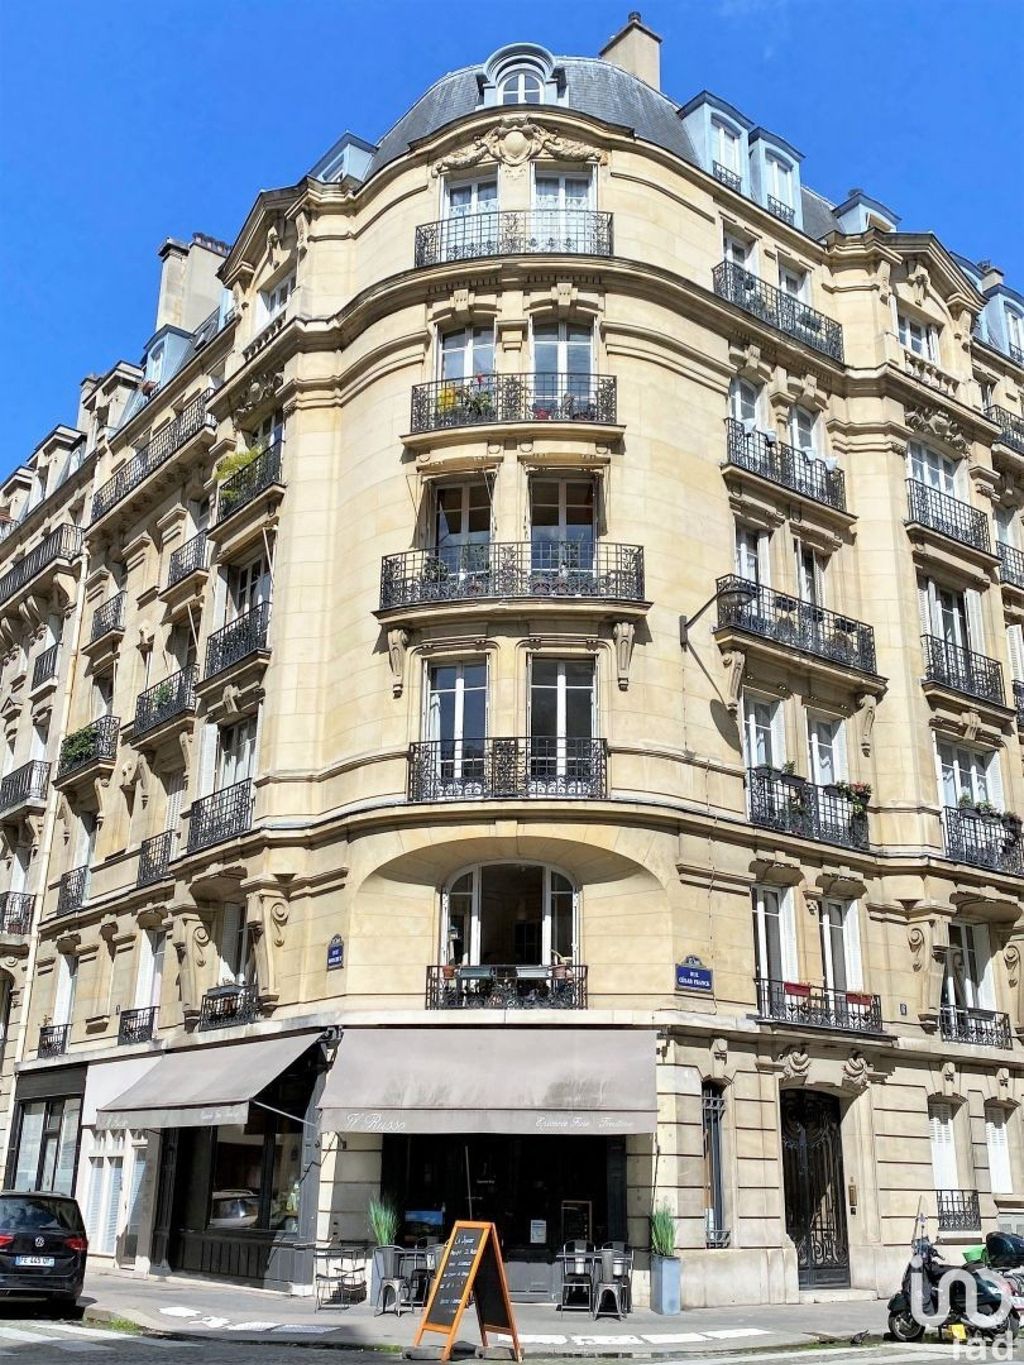 Achat studio à vendre 10 m² - Paris 15ème arrondissement